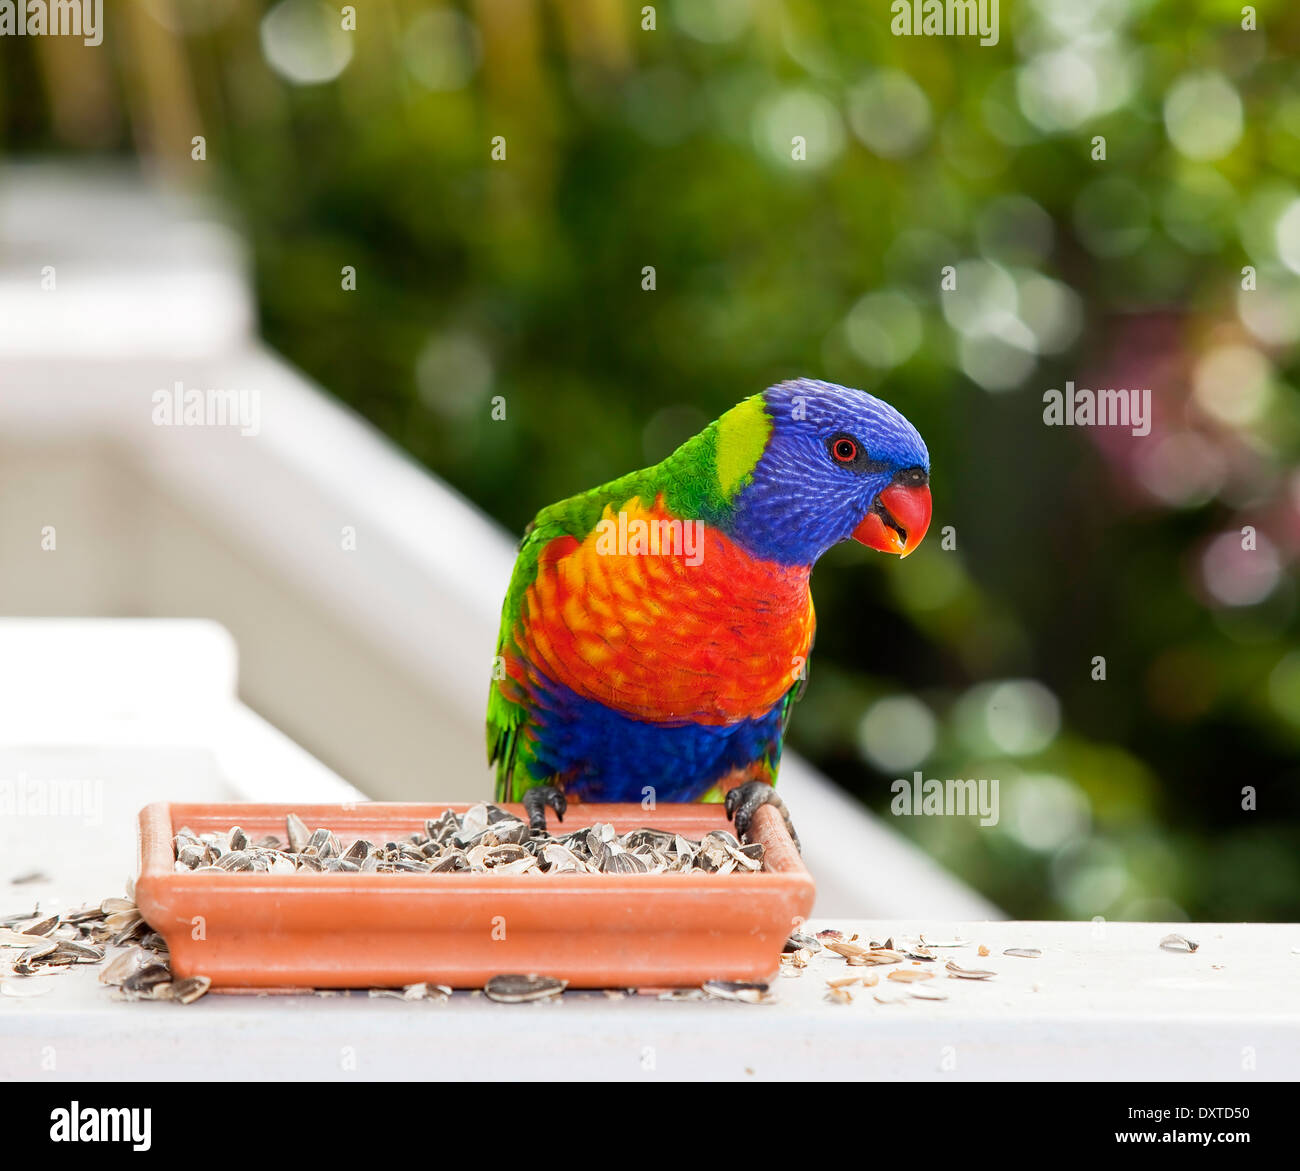 Rainbow Lorikeet Parrot australiennes indigènes à partir de graines d'alimentation bac. Banque D'Images